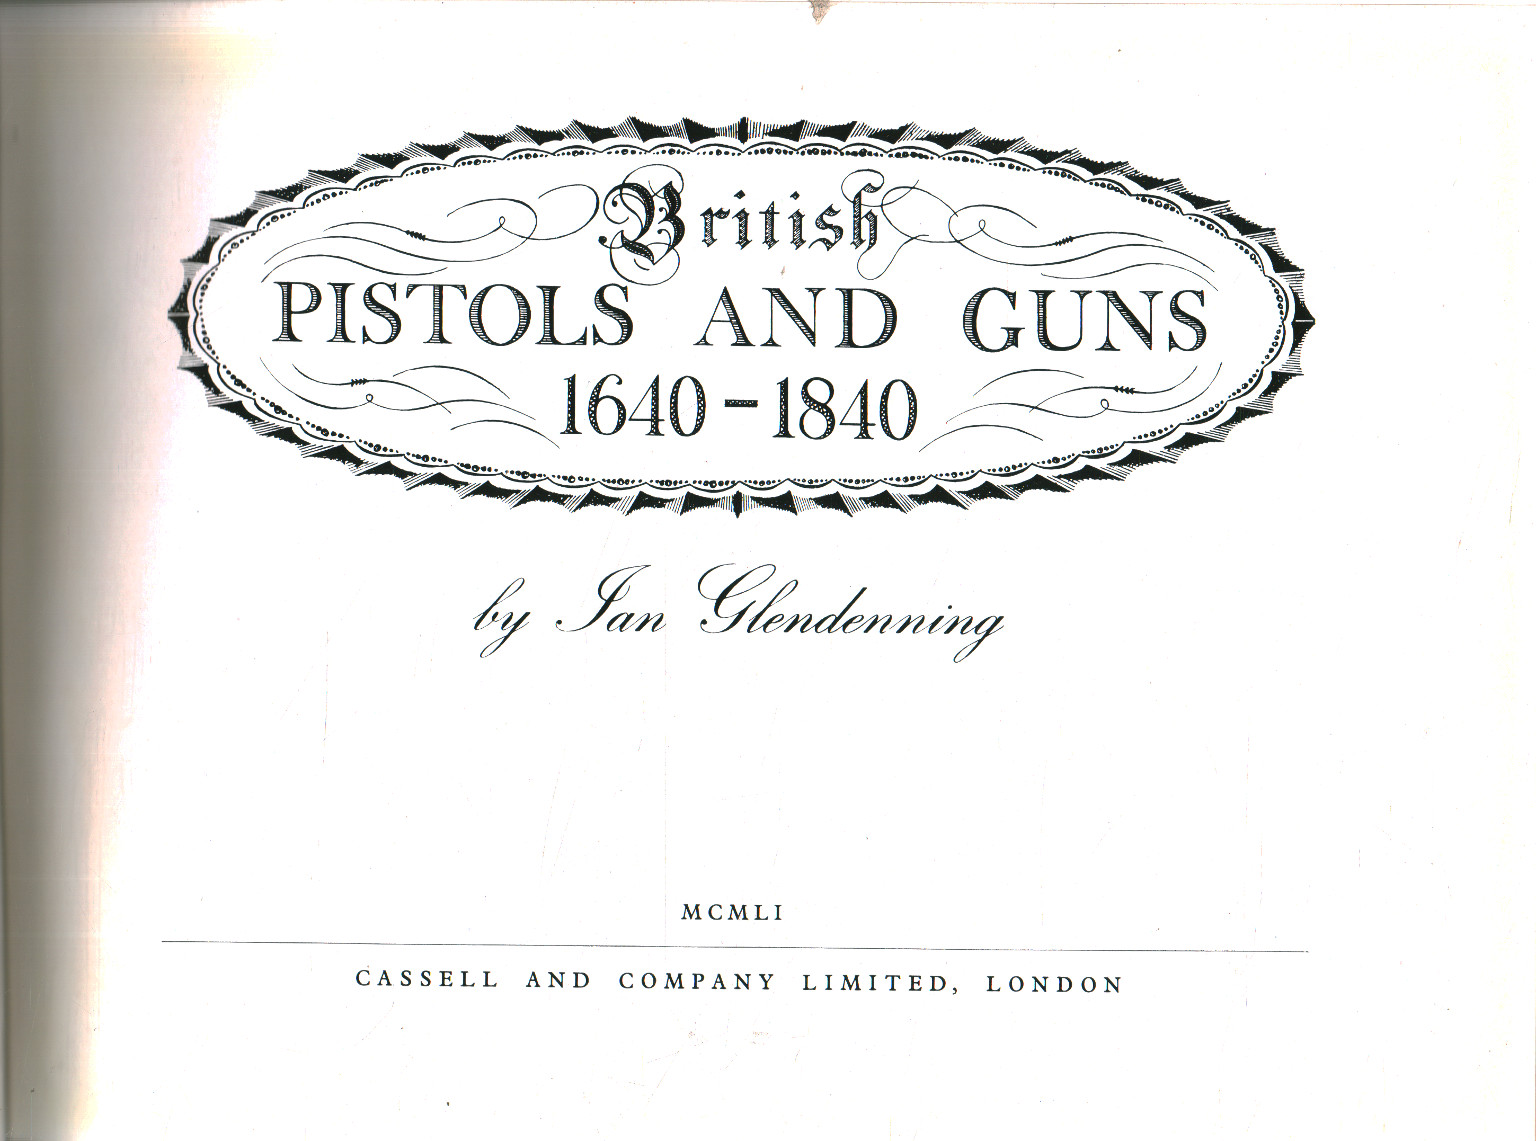 Pistolas y pistolas británicas 1640-1840, Jan Glendenning